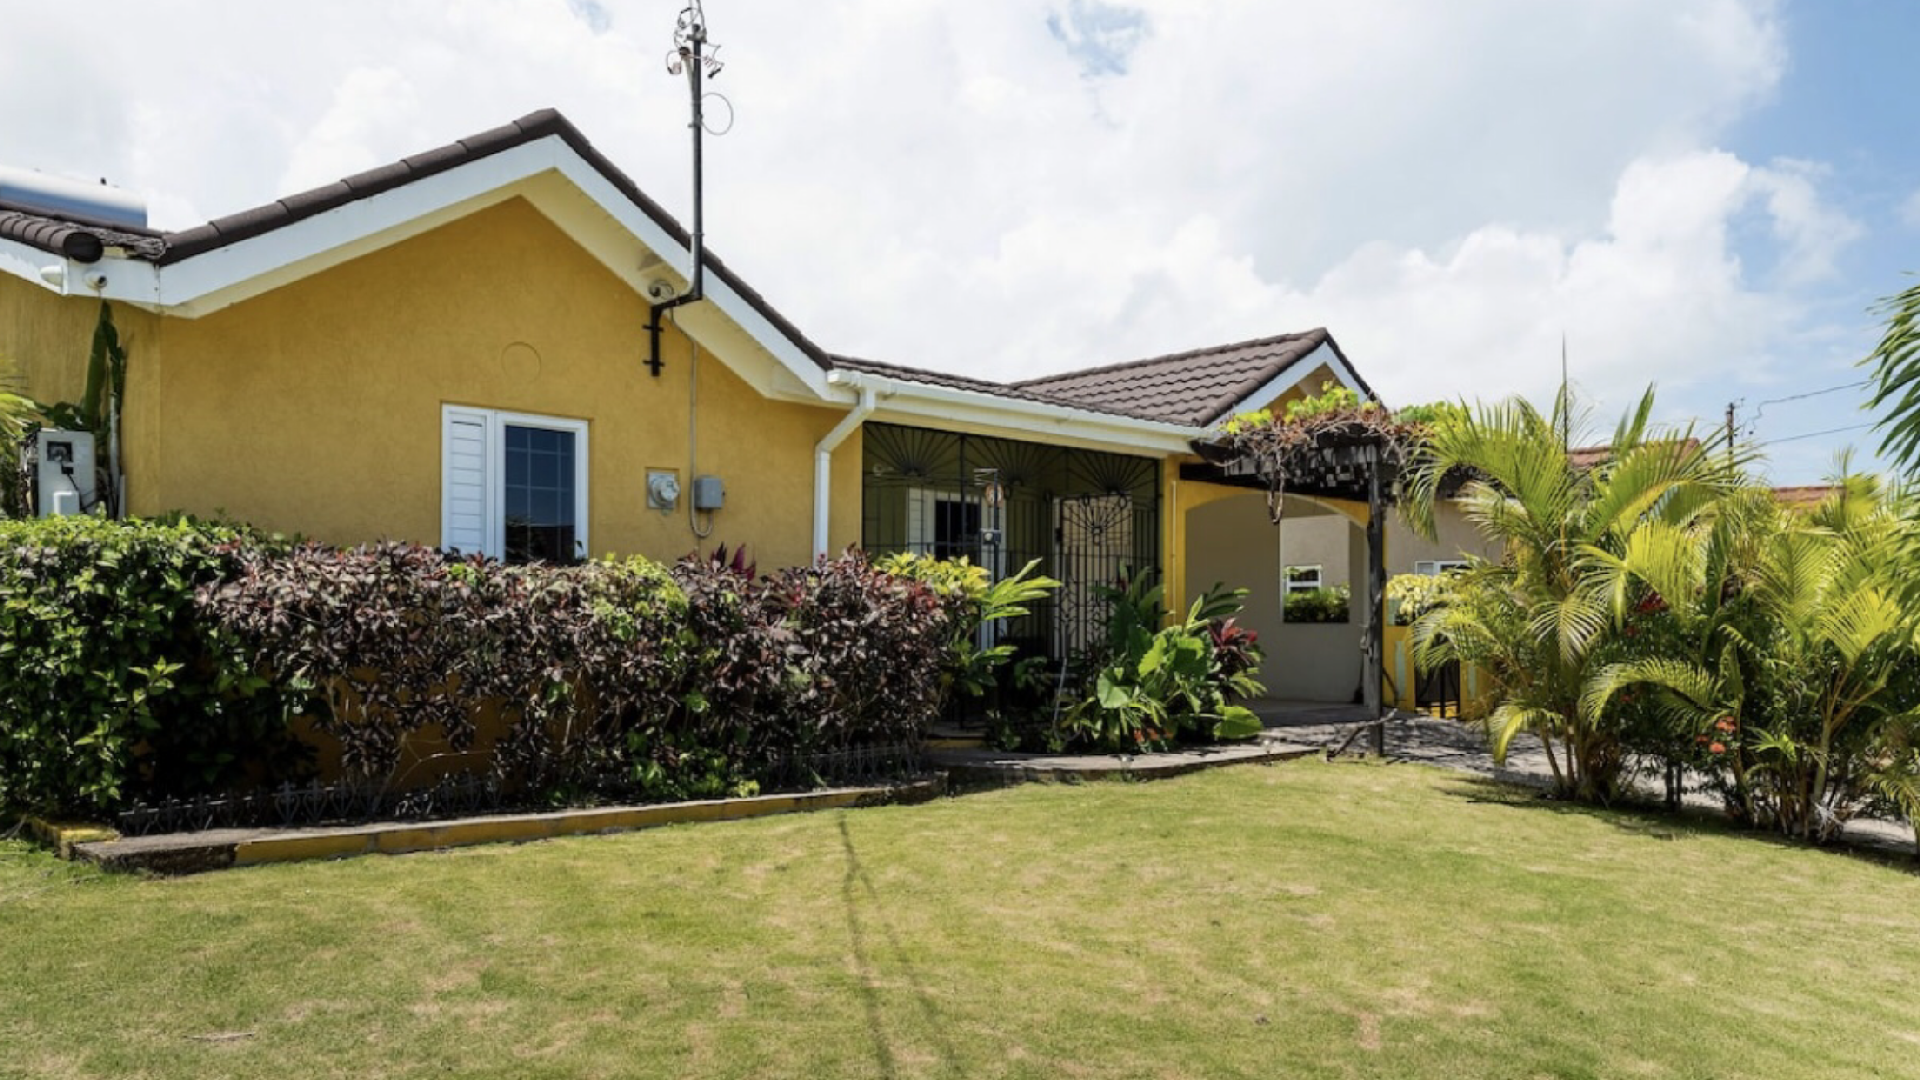 Ferienhaus für 6 Personen in Saint Ann's Ferienhaus in Jamaika